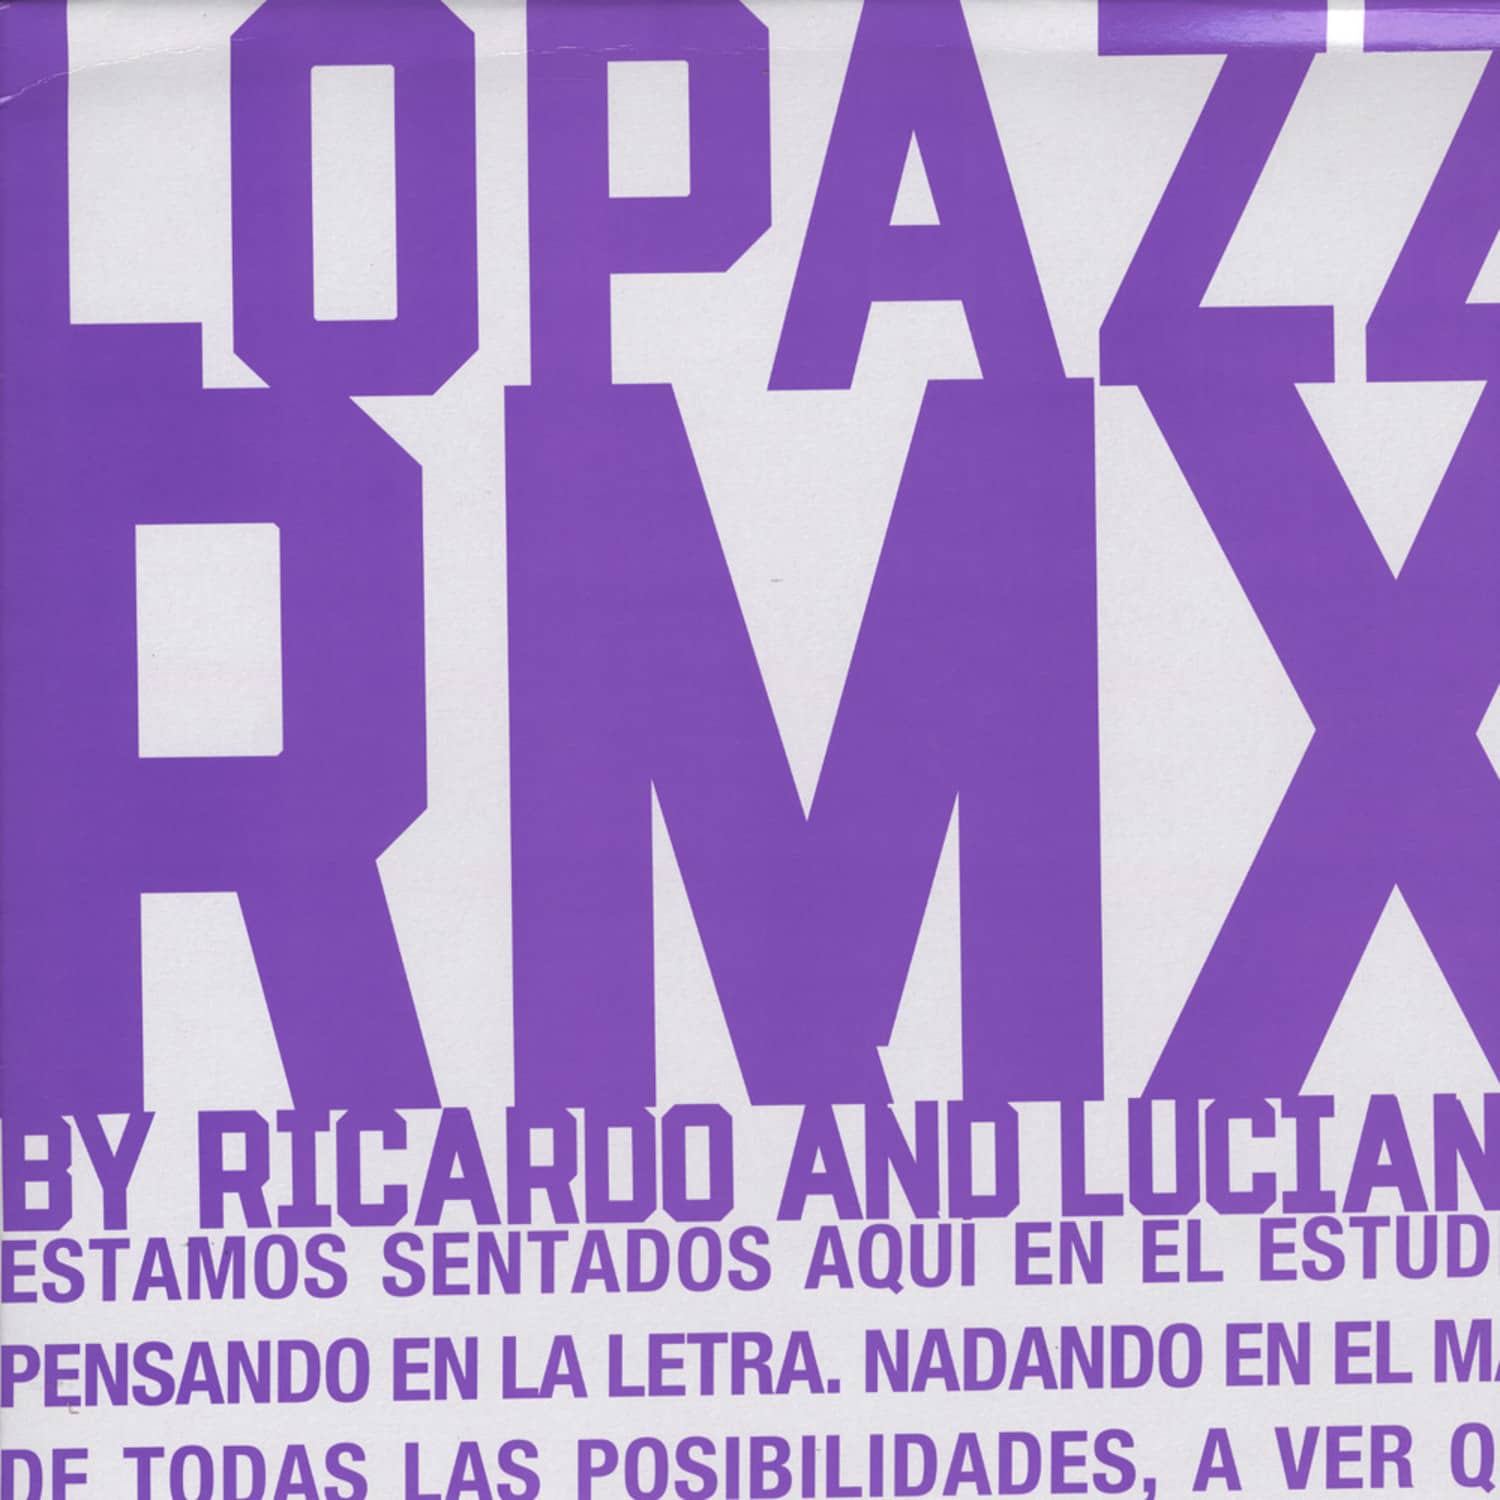 Lopazz - MIGRACION / RICARDO VILLALOBOS & LUCIANO REMIXES